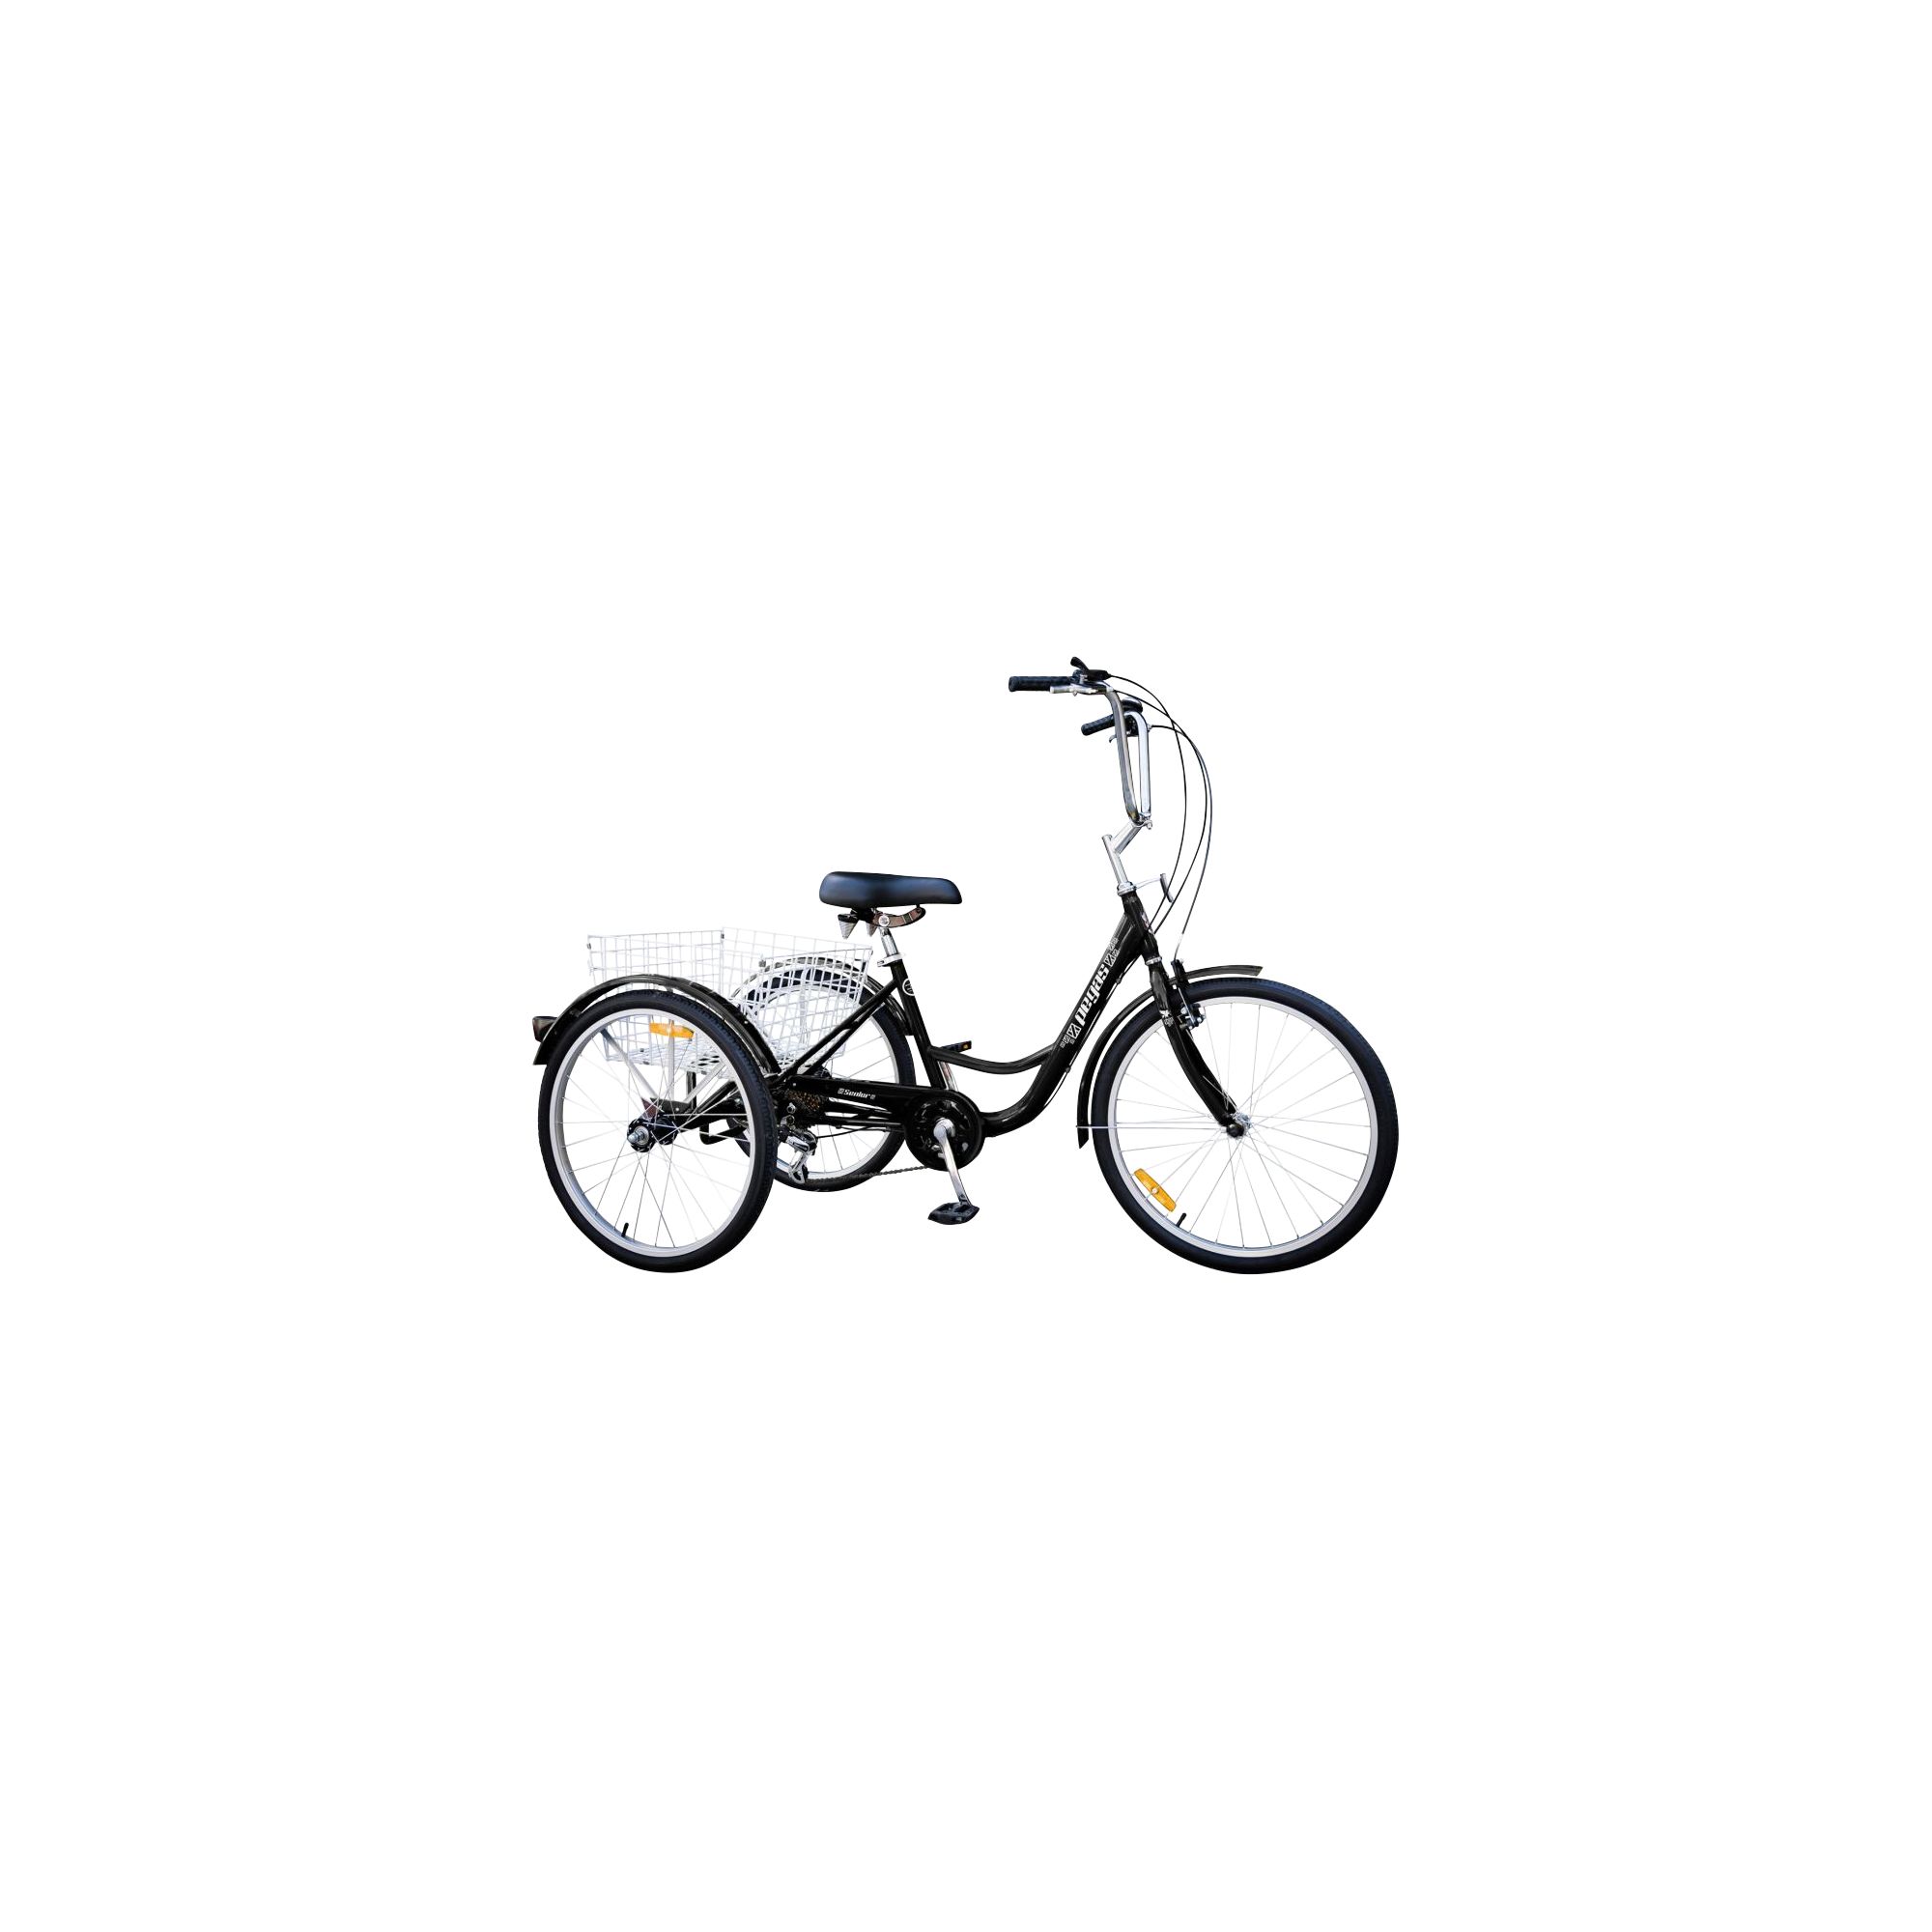 SENIOR 24 inch biciclete imagine 2022